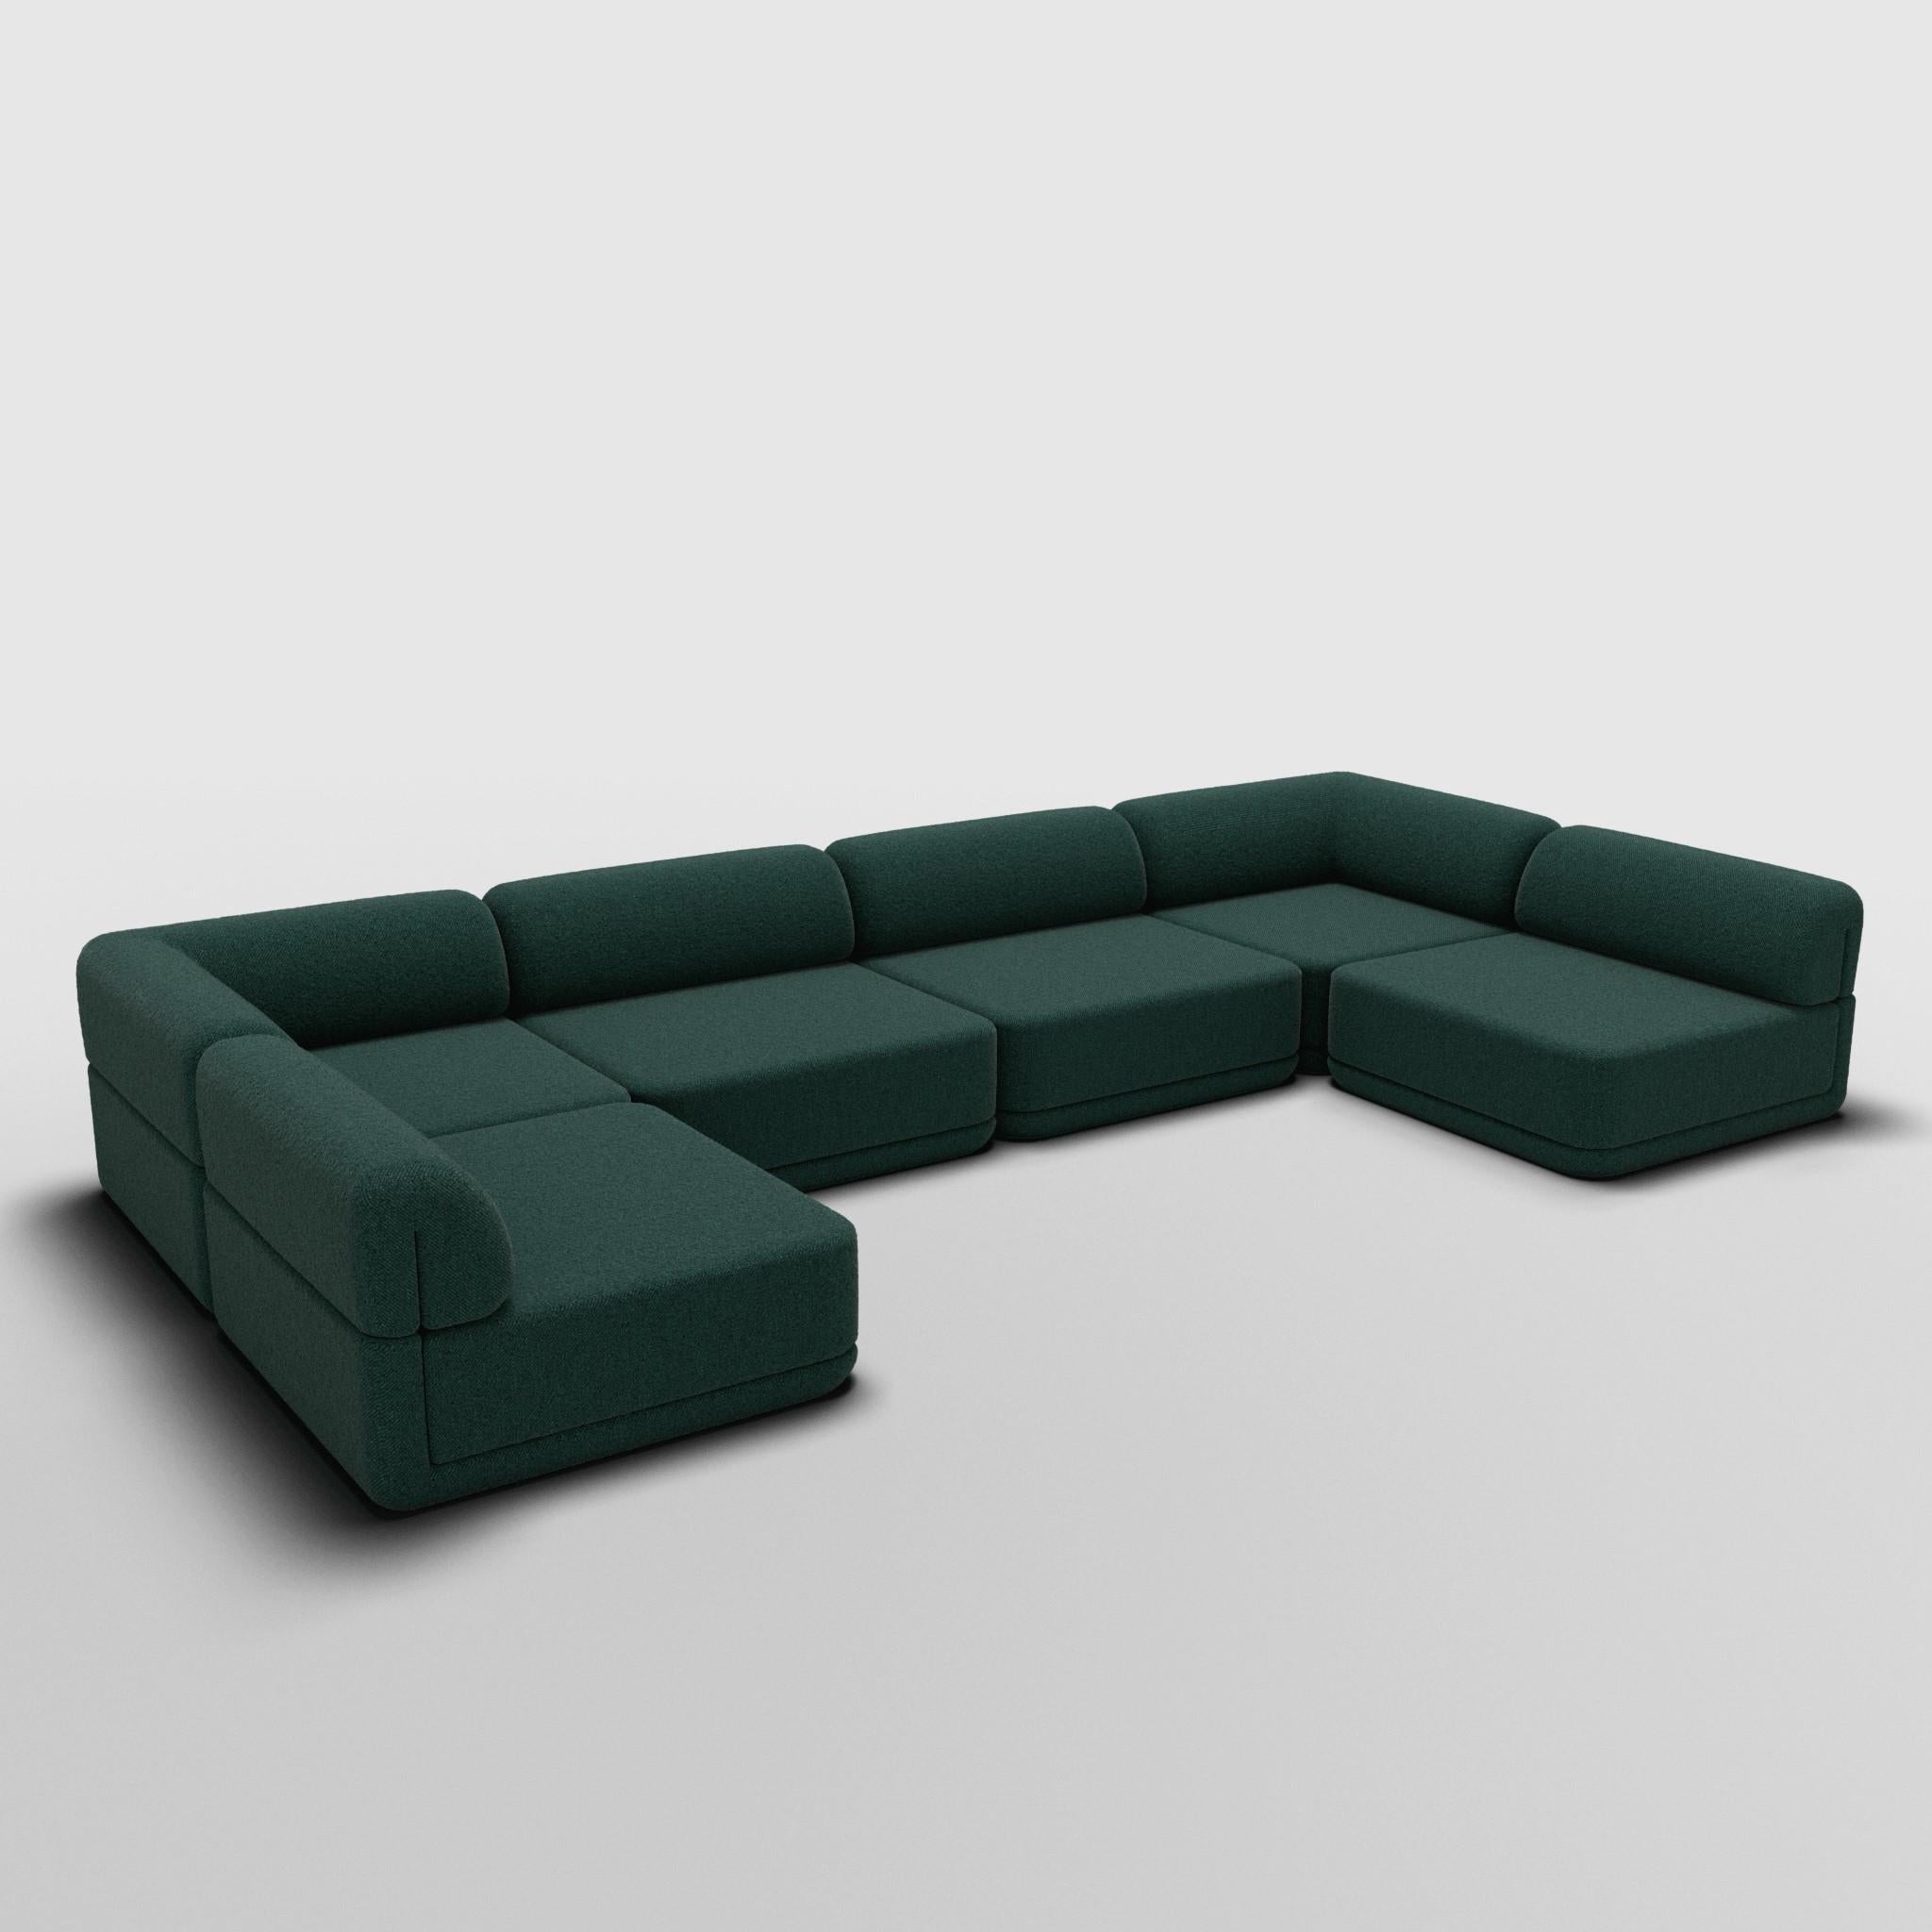 U-förmige Sitzgruppe - inspiriert von italienischen Luxusmöbeln der 70er Jahre

Entdecken Sie das Cube Sofa, wo Kunst auf Anpassungsfähigkeit trifft. Sein skulpturales Design und der individuell anpassbare Komfort schaffen unendliche Möglichkeiten